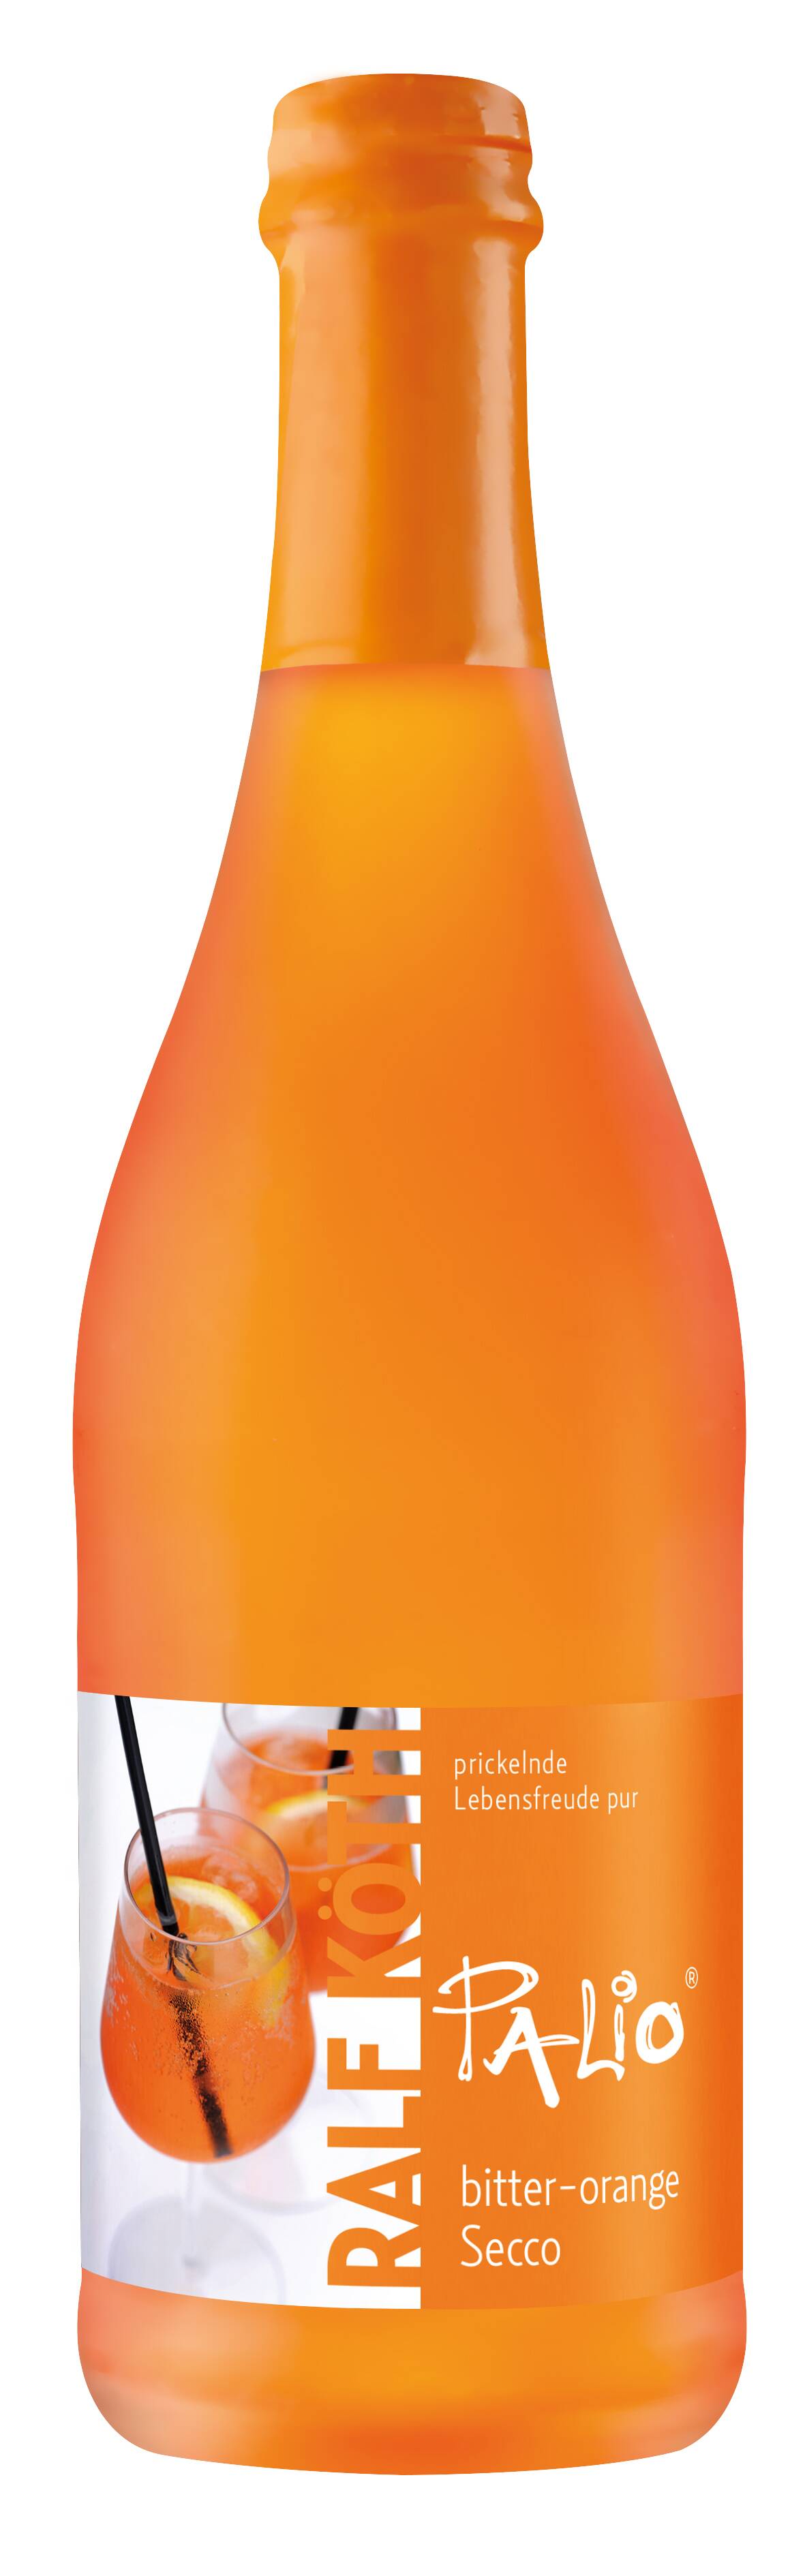 Palio bitter-orange - Secco